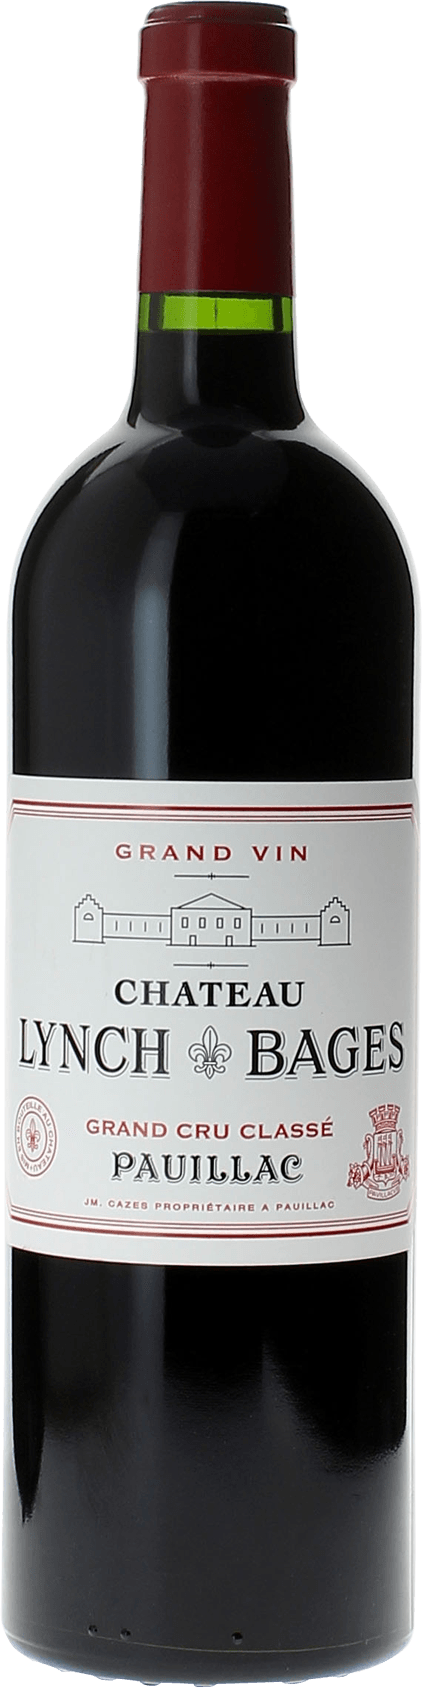 Lynch bages 2020 5 me Grand cru class Pauillac, Bordeaux rouge